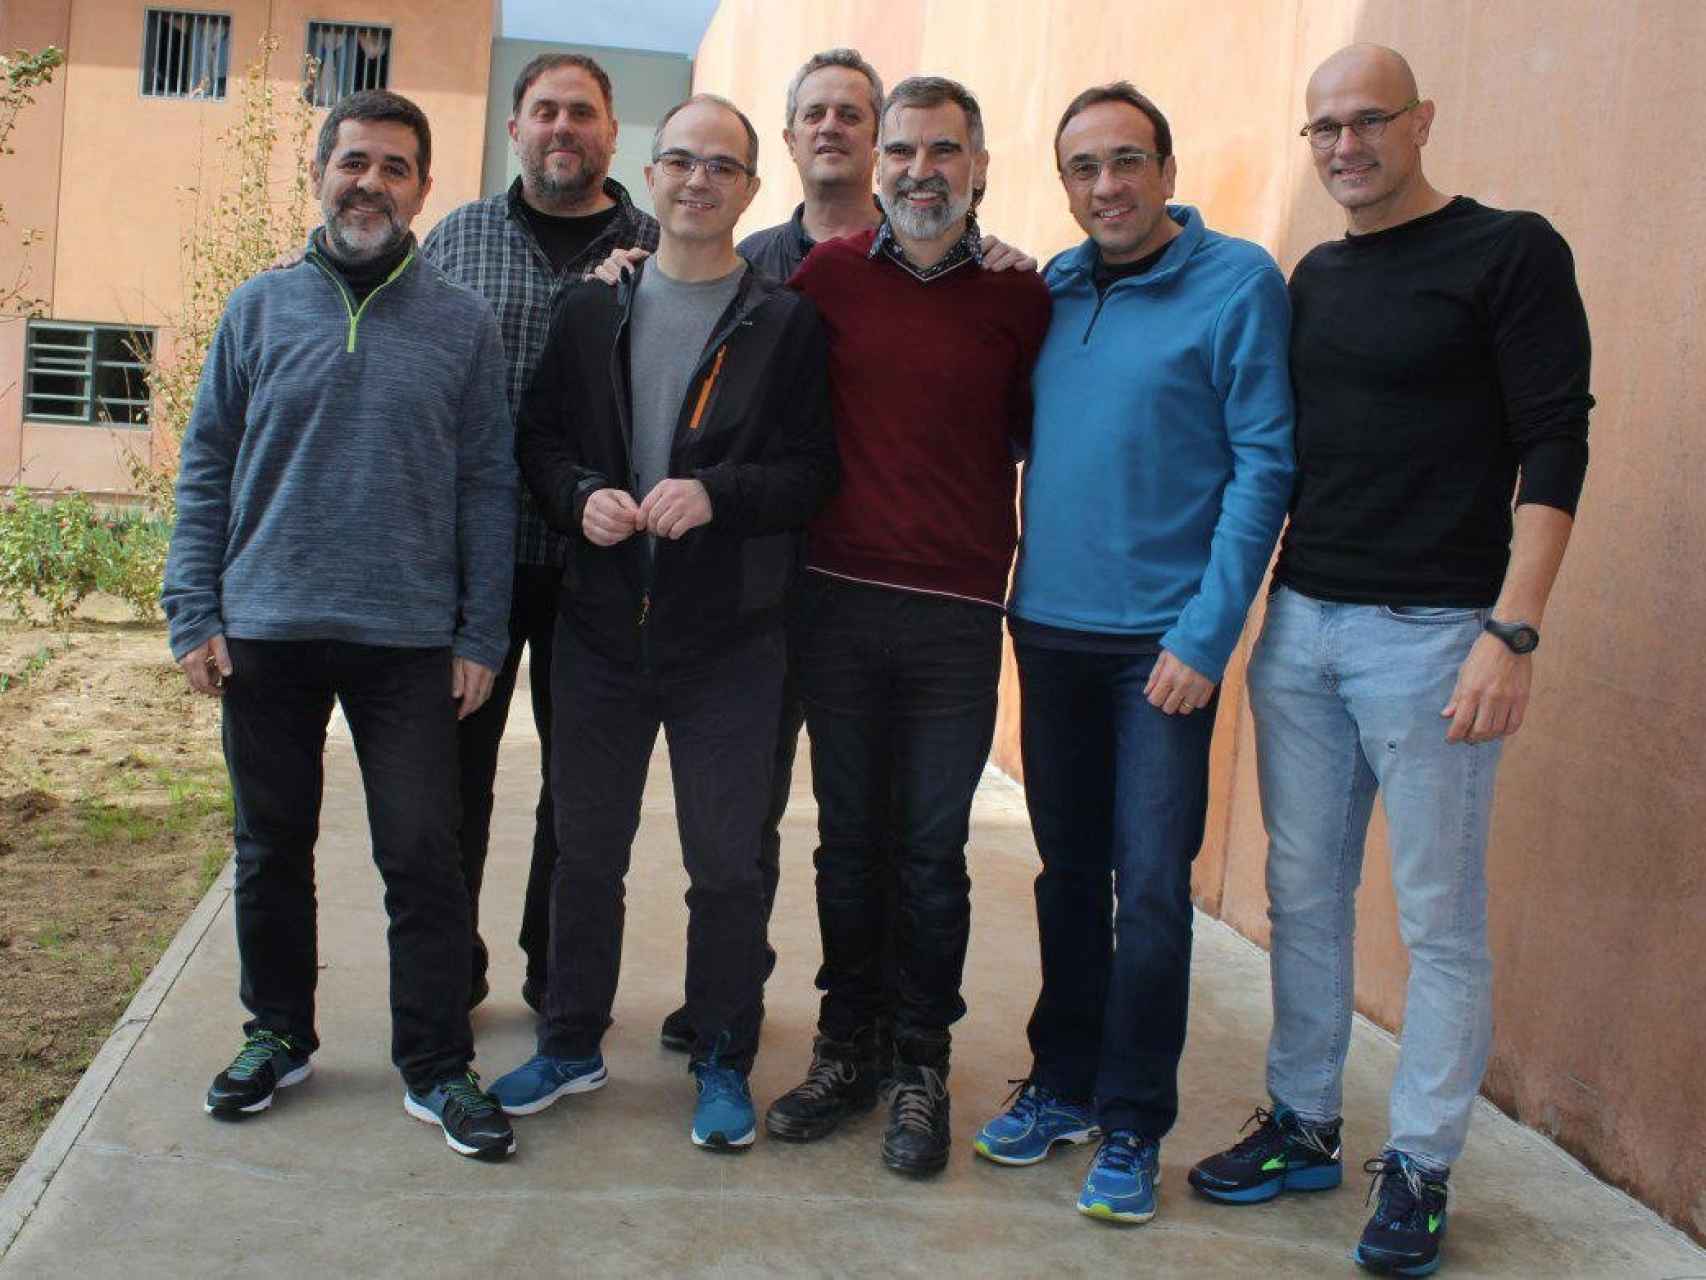 Los siete presos independentistas en Lledoners: Jordi Sànchez, Oriol Junqueras, Jordi Turull, Joaquim Forn, Jordi Cuixart, Josep Rull y Raül Romeva.